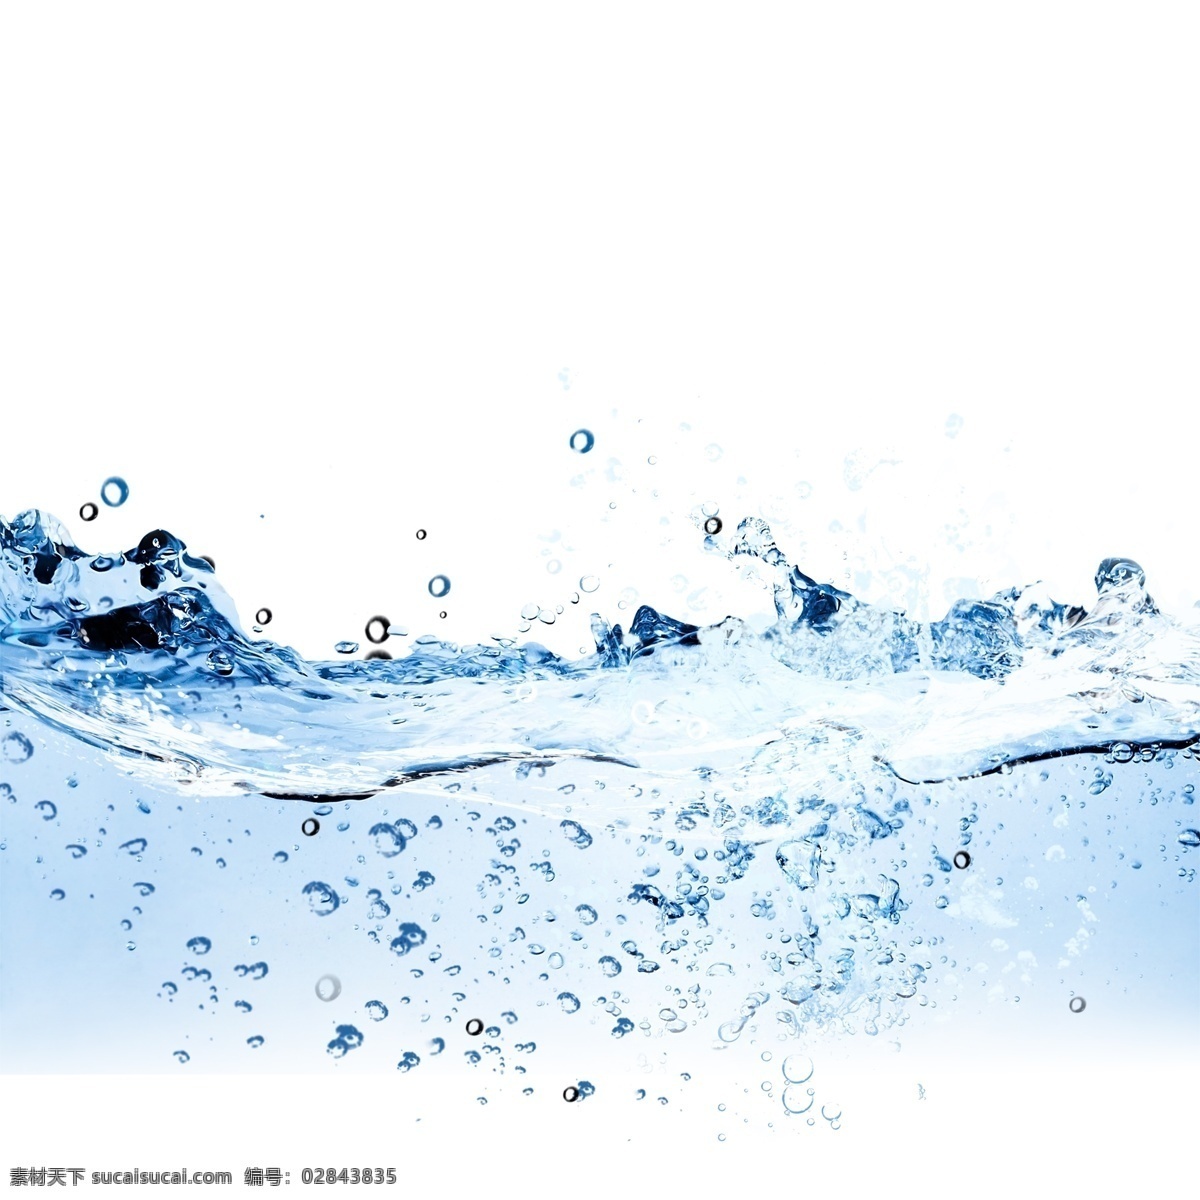 蓝色 水面 水滴 元素 蓝色水面 水环 水波纹 水花 水 水流 水珠 水圈 喷溅 溅起水花 波纹 溅起的